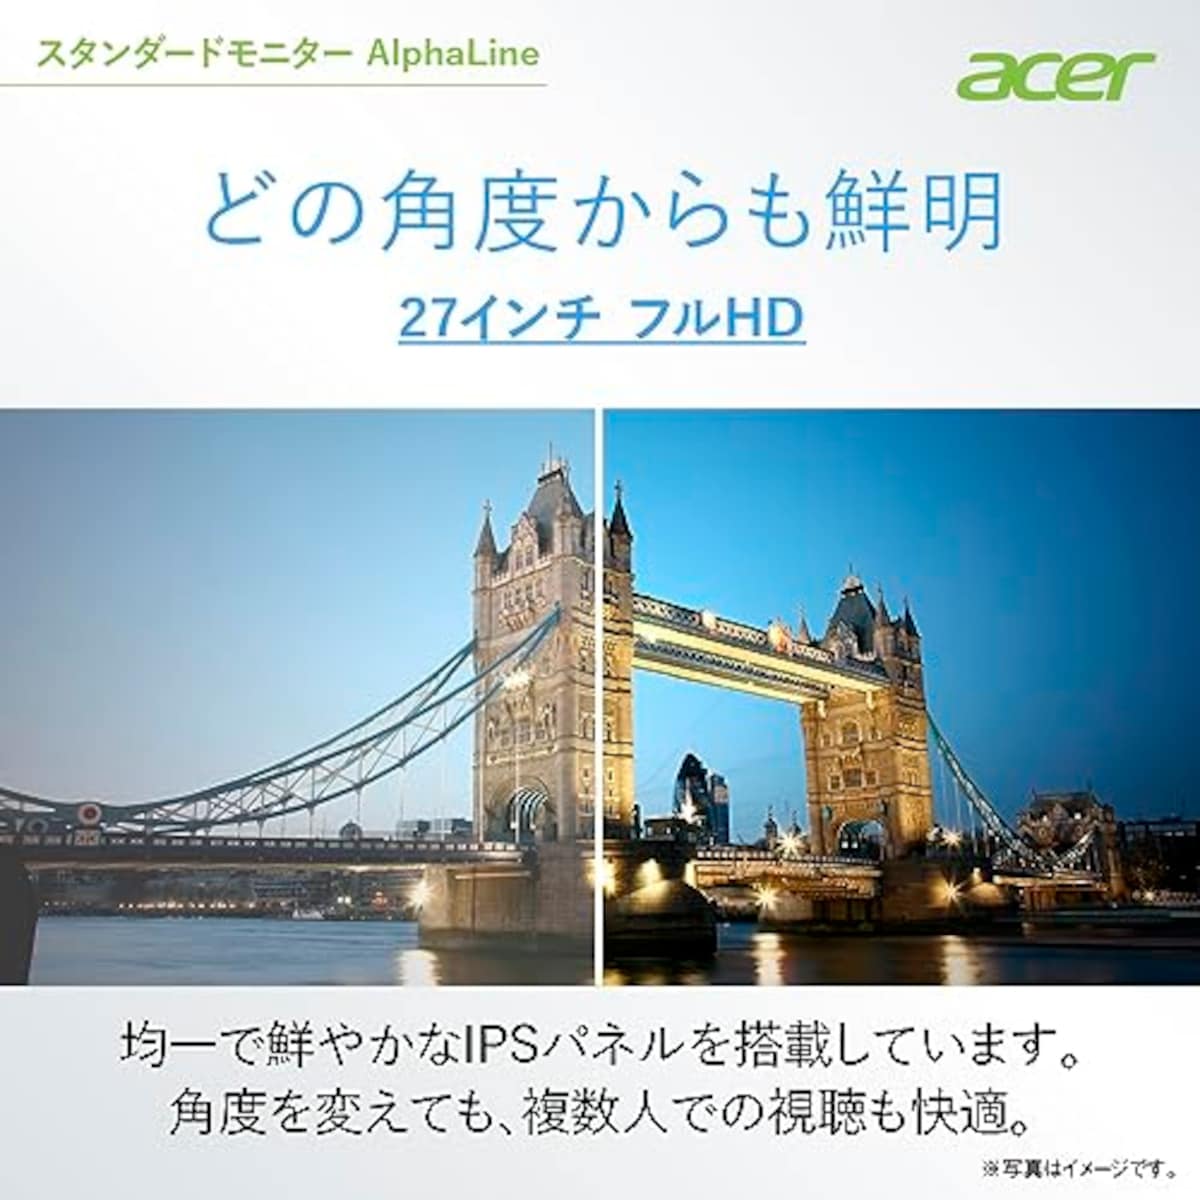  【Amazon.co.jp限定】日本エイサー Acer スタンダードモニター 27インチ IPS フルHD 100Hz 1ms スピーカー・ヘッドホン端子搭載 HDMI1.4 AMD FreeSync EK271Ebmix画像2 